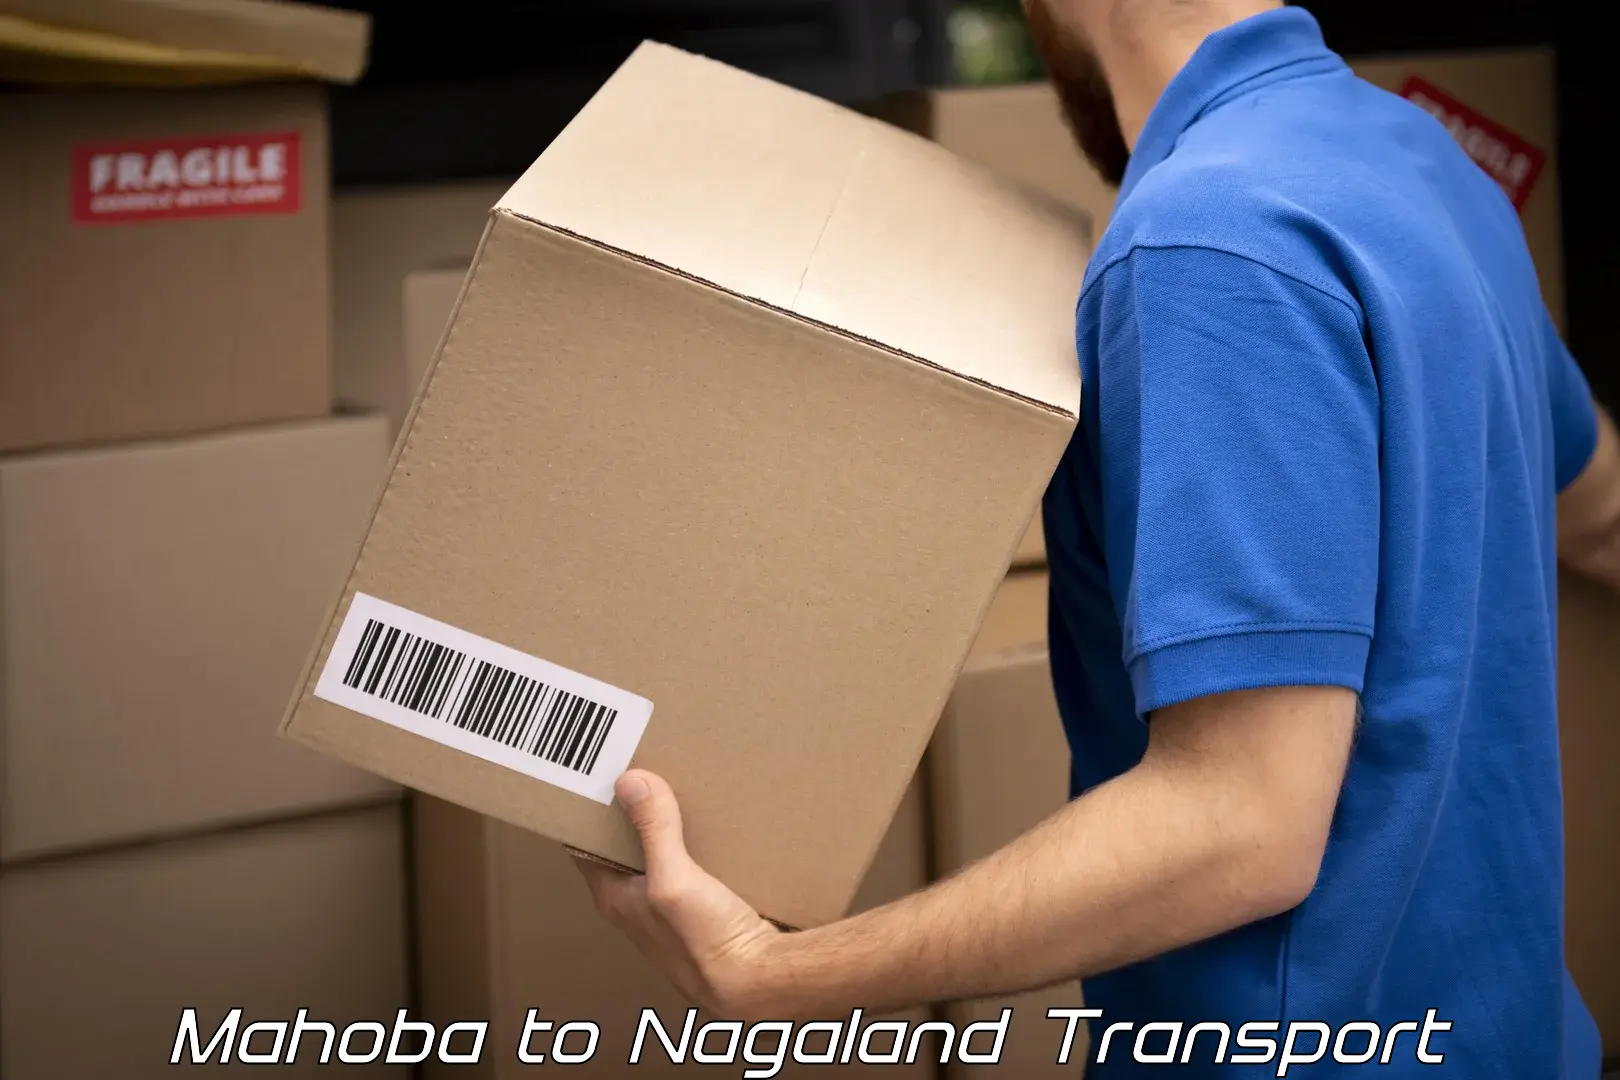 Bike shipping service Mahoba to NIT Nagaland